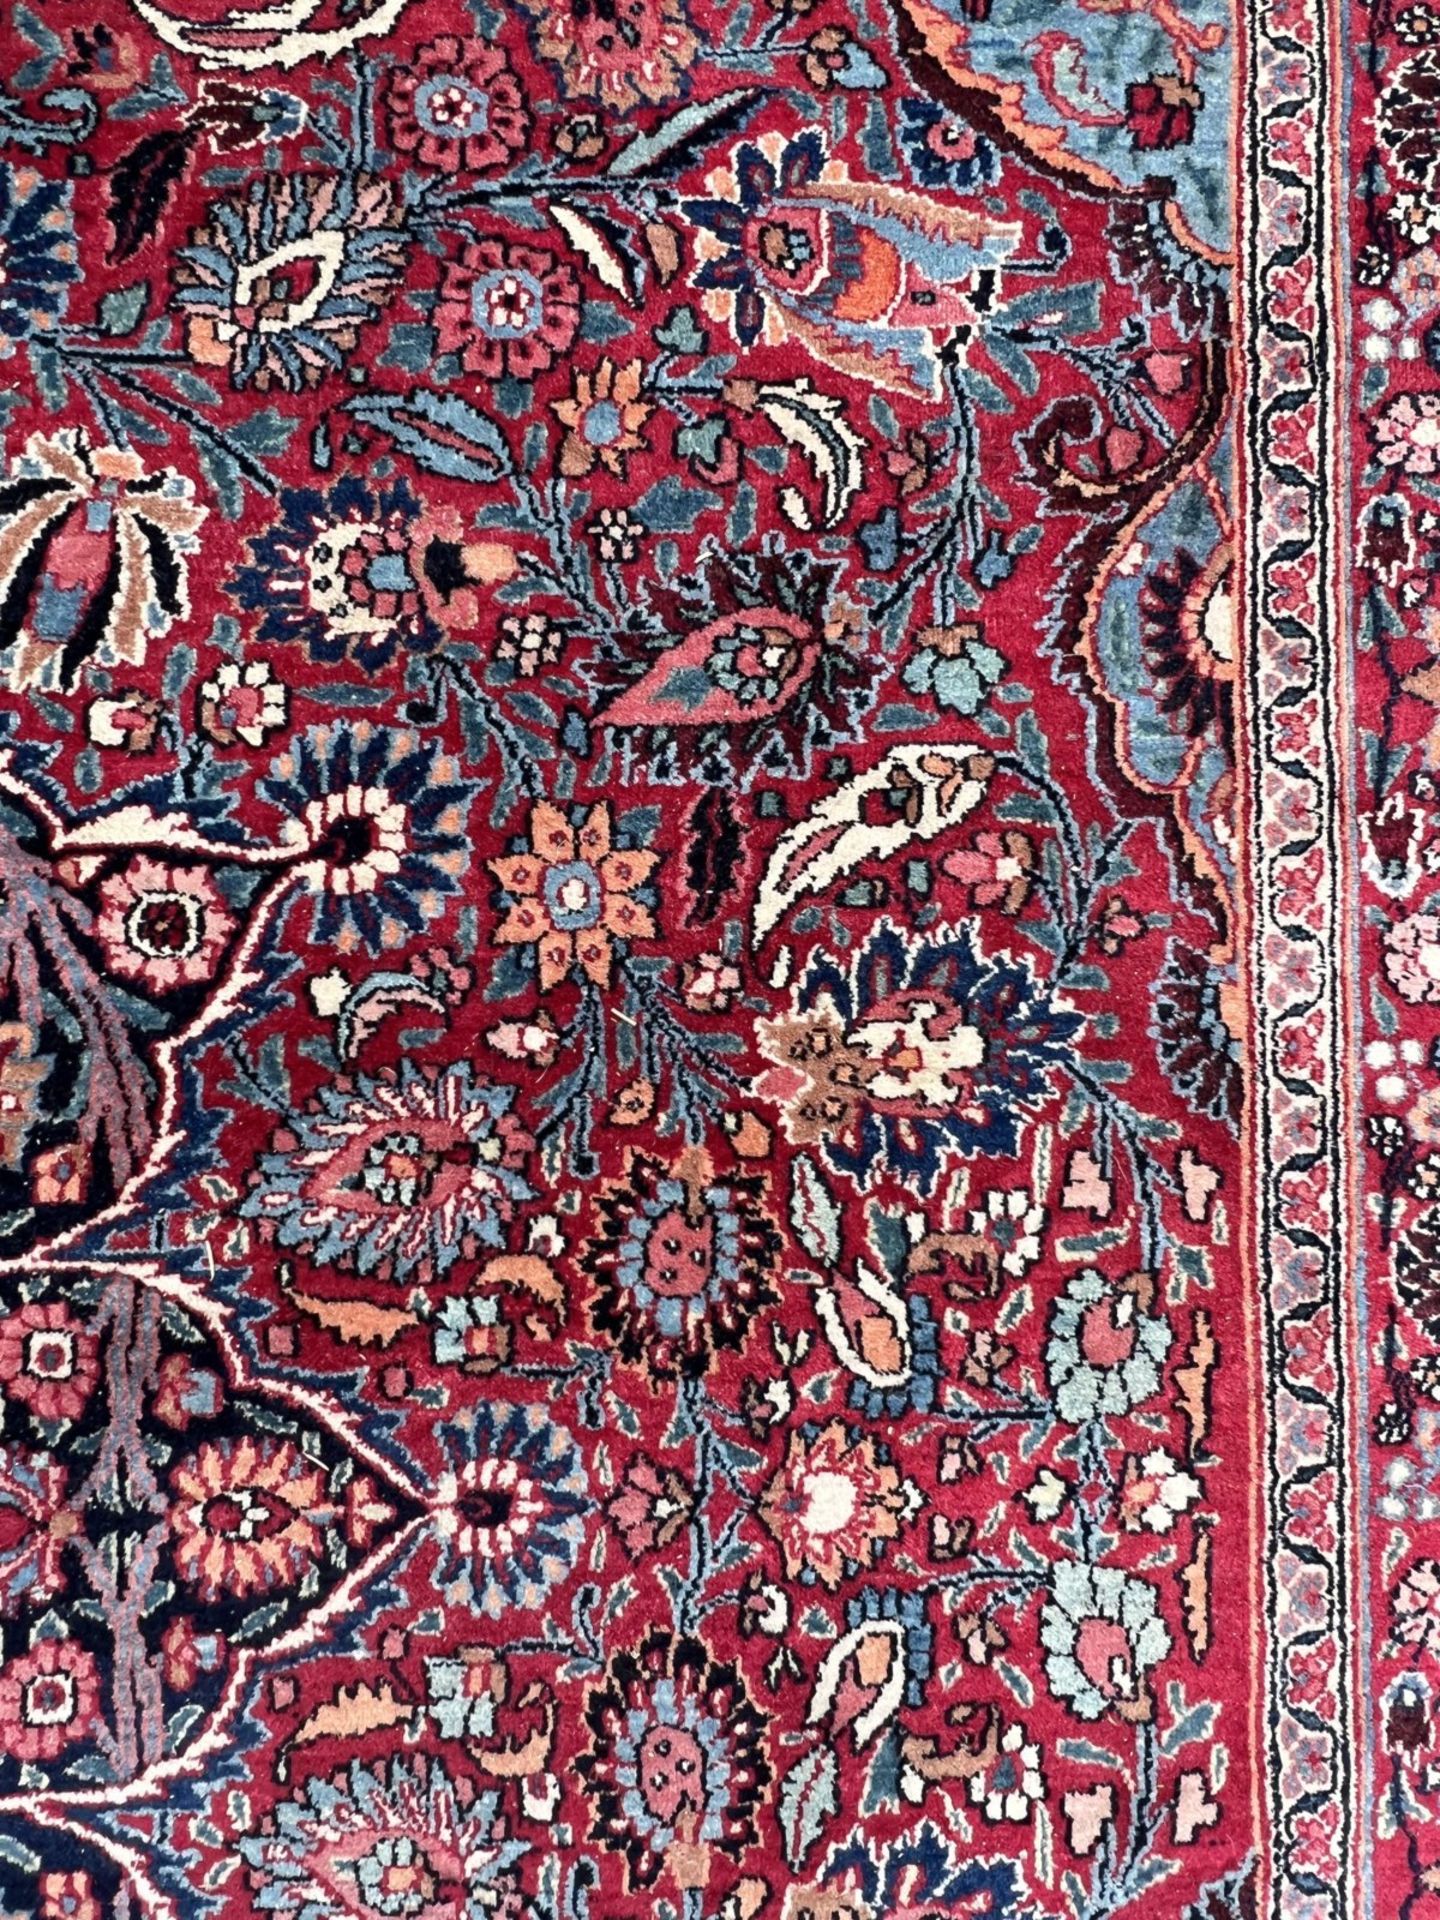 Mesched Salonteppich. Persien. Um 1900. Antik. Signiert ''Hamid Hadawi''. - Bild 14 aus 17